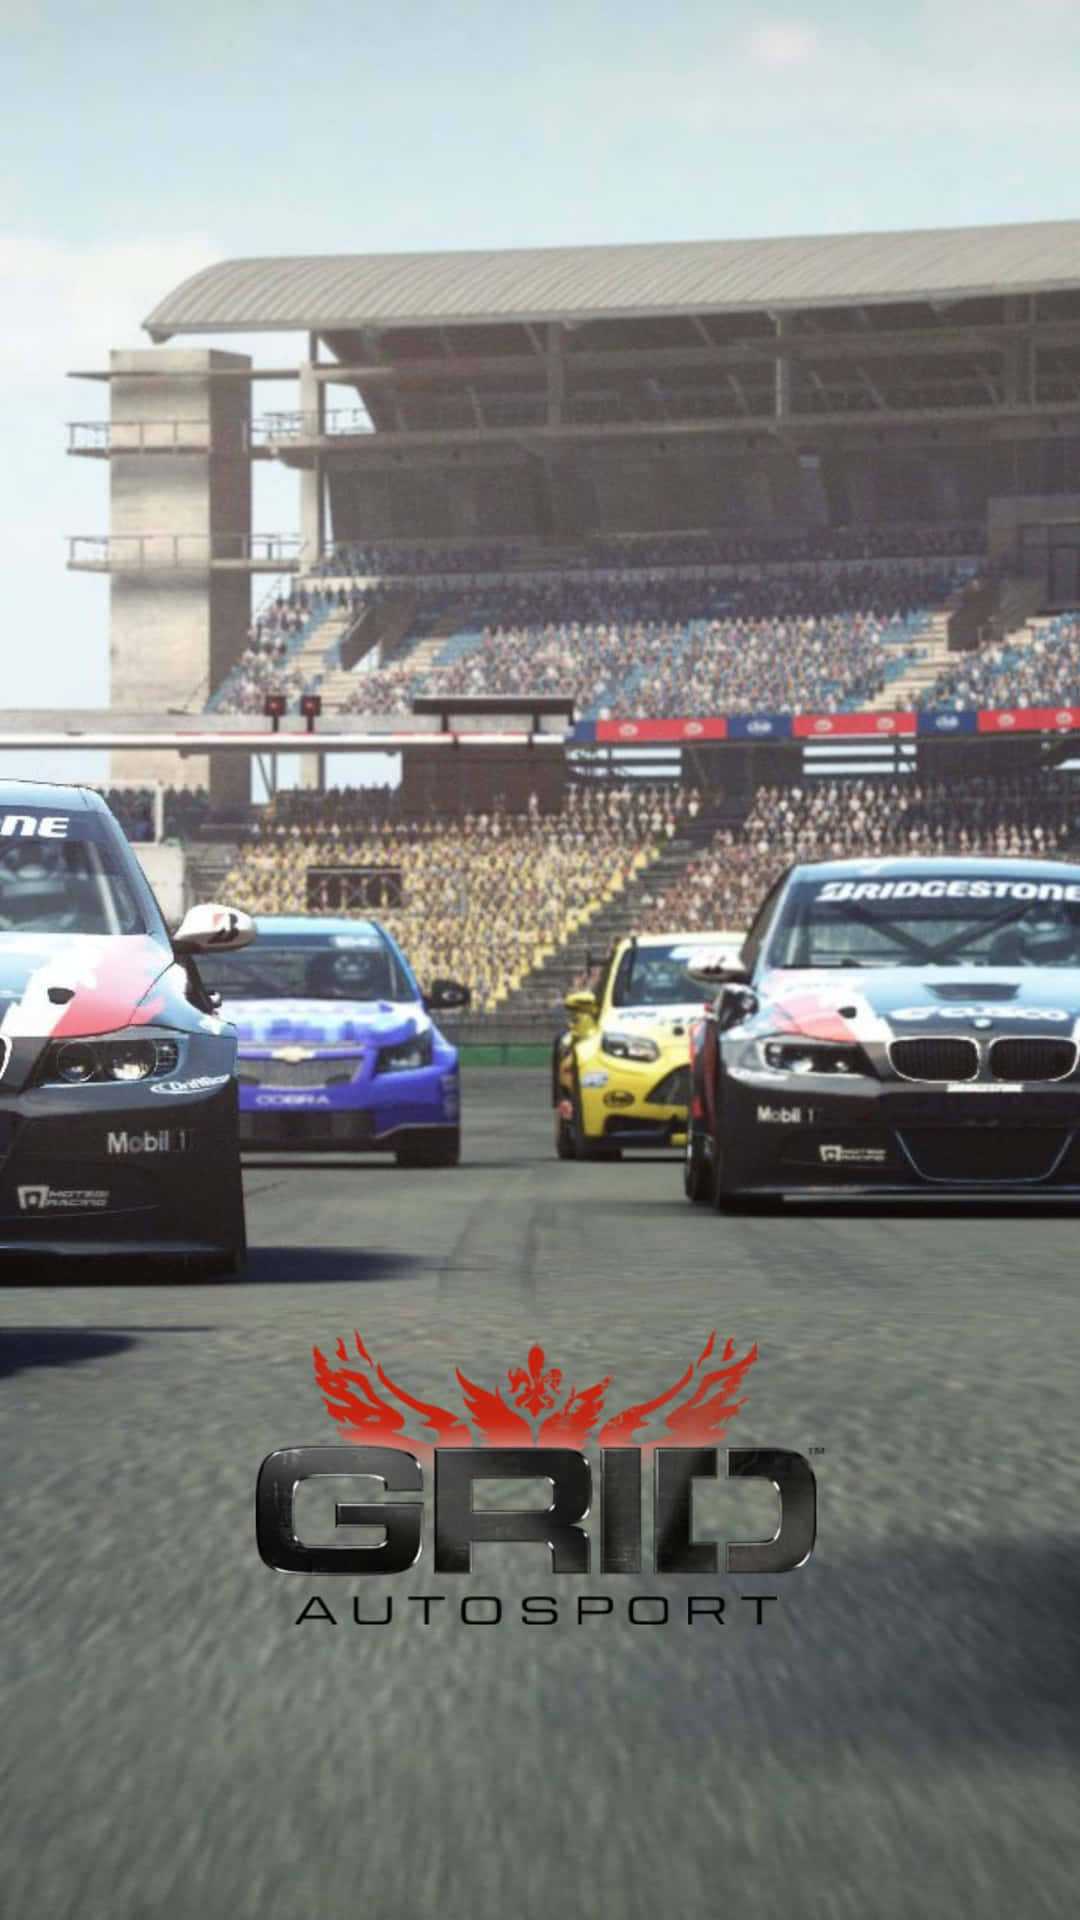 Upplevkänslan Av Racing Med Android Grid Autosport Genom Ditt Datorskärms- Eller Mobiltelefonens Bakgrundsbild.